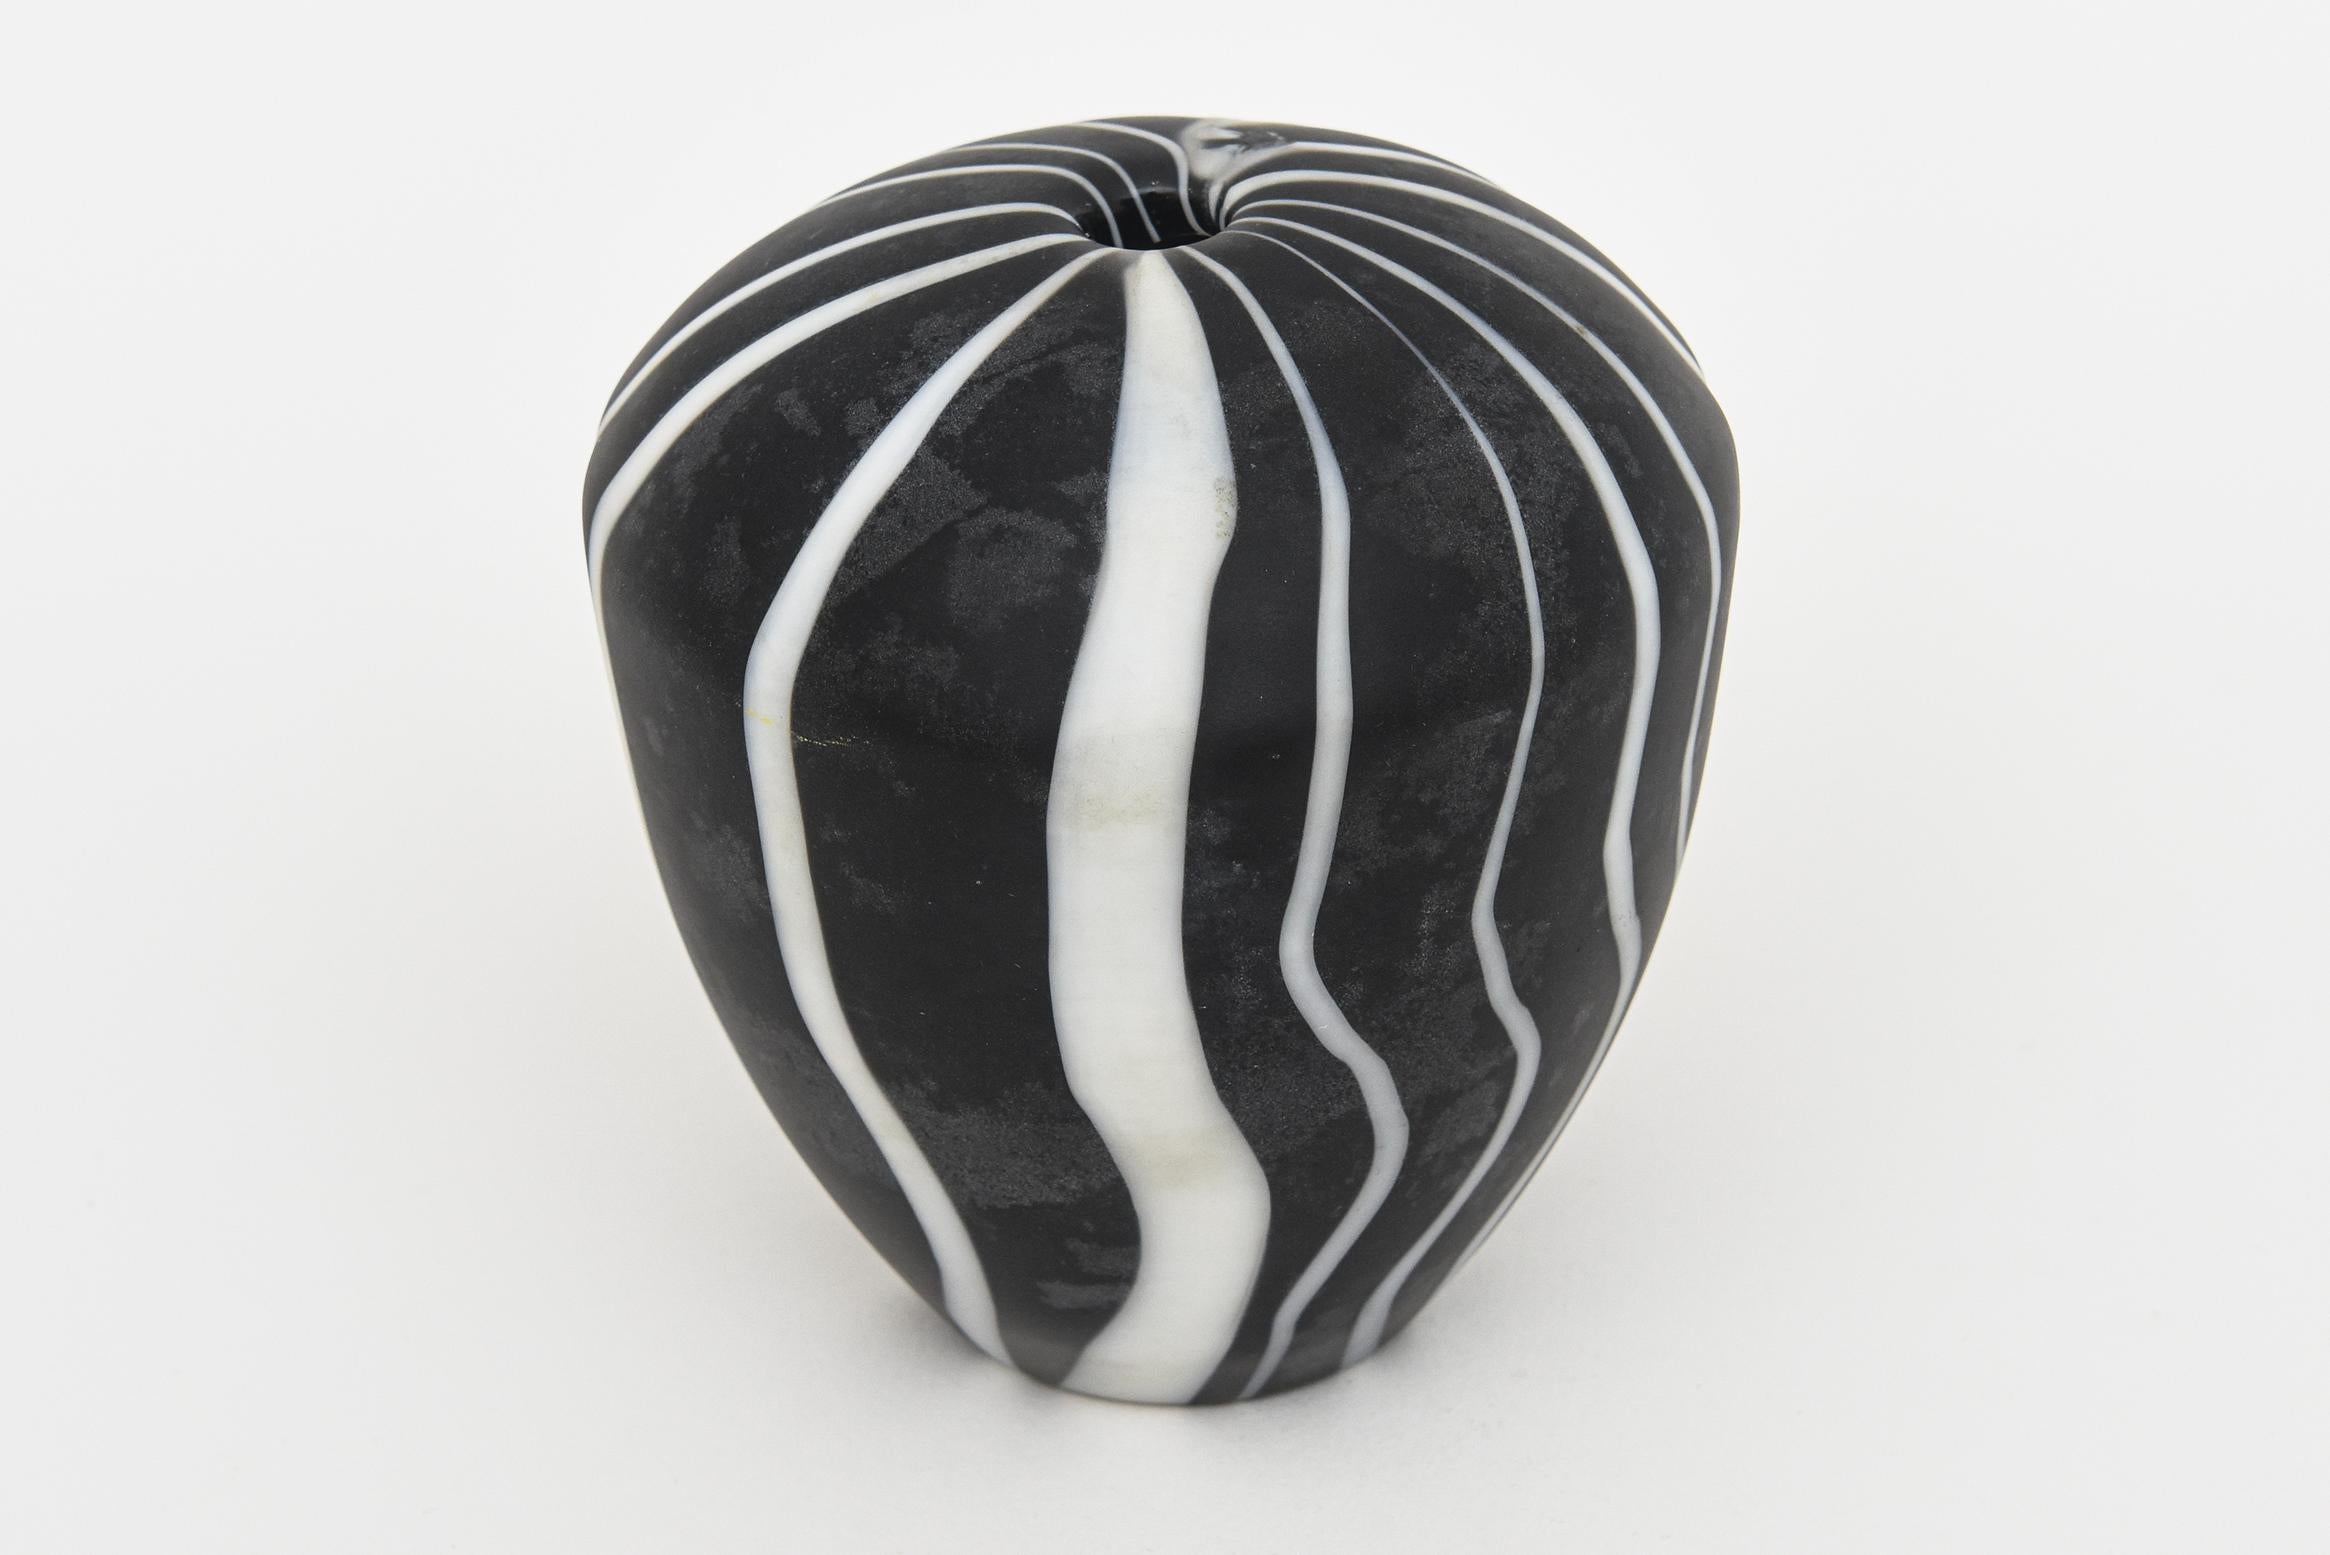 Diese Vintage 1980's Murano unterzeichnet Salviati mundgeblasenem Mattglas Objekt und oder Skulptur sind schwarz und weiß abstrakte Streifen der Welle mit unterschiedlichen Breiten. Es ist eine Skulptur und könnte auch eine Vase mit einer Knospe